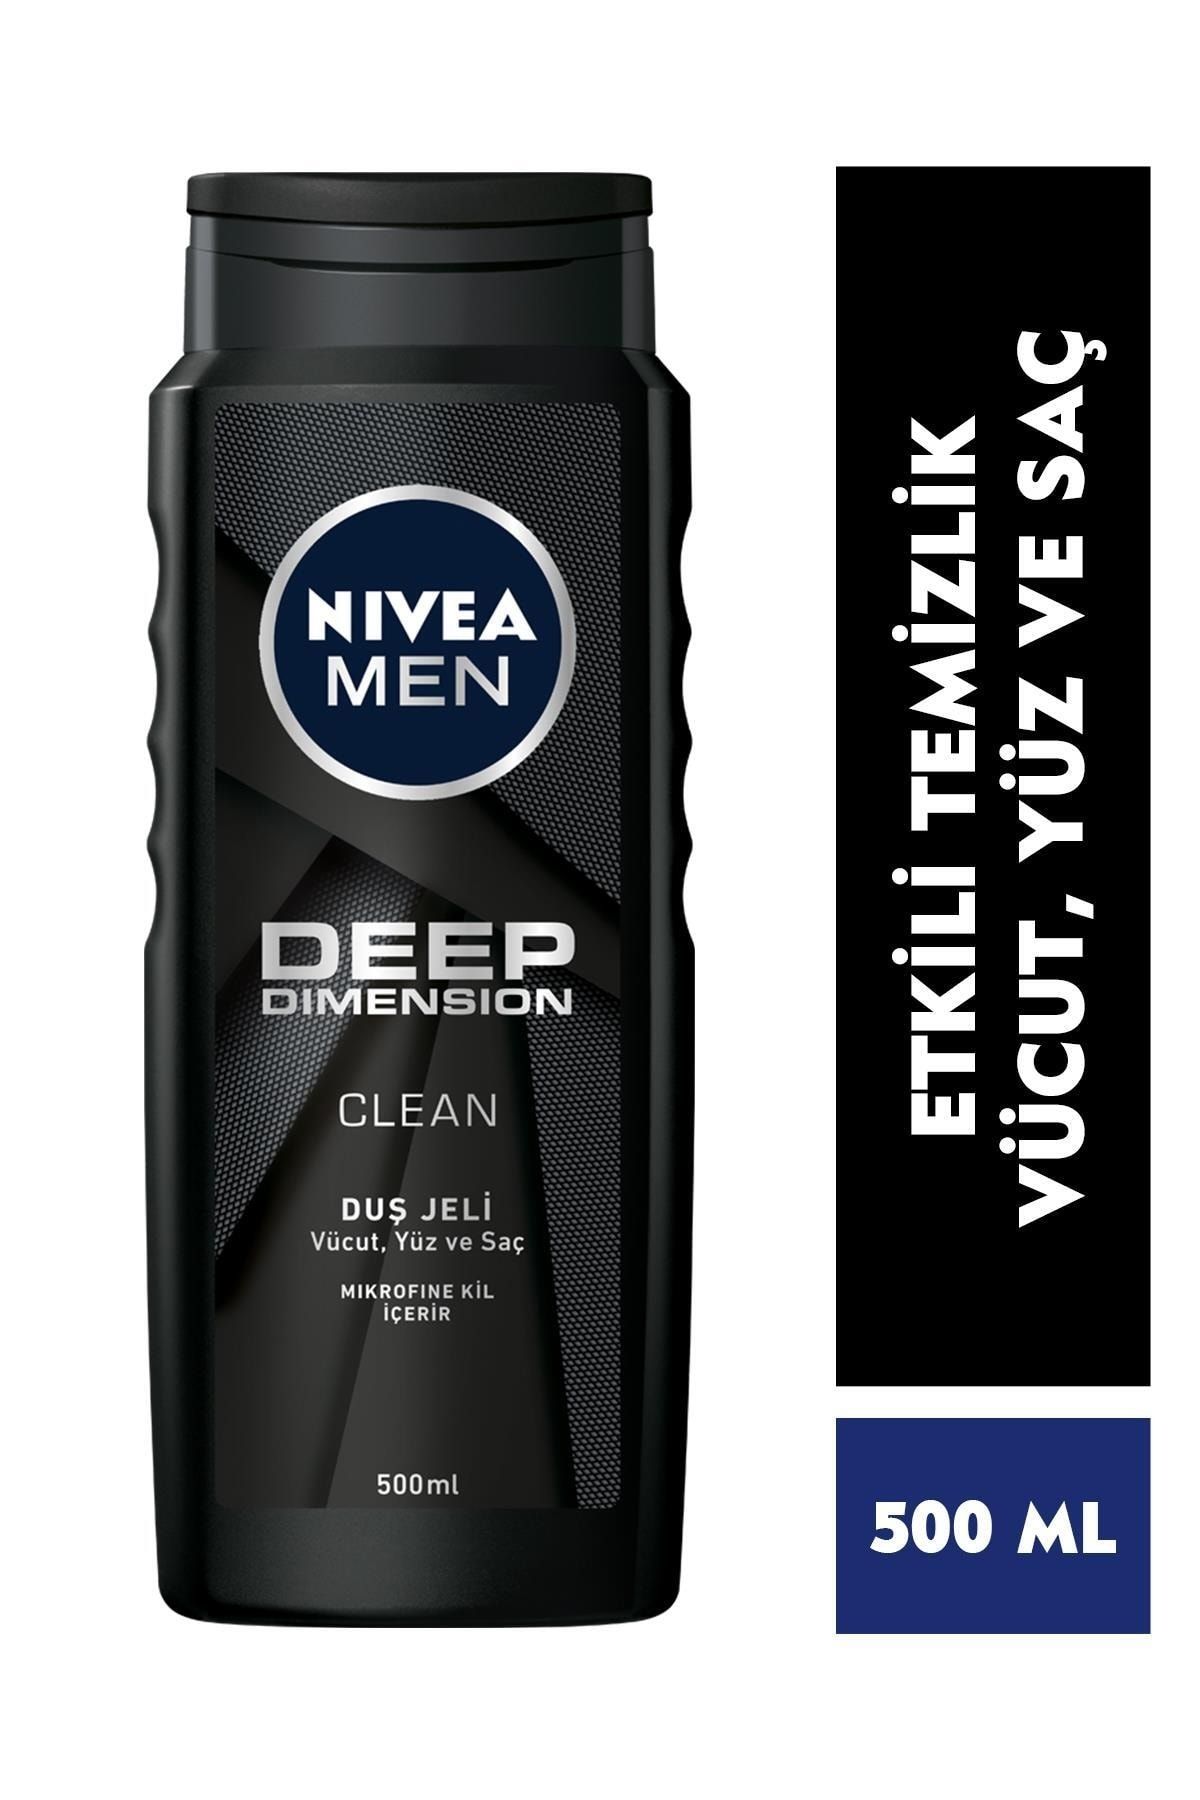 NIVEA Men Deep Dimension Duş Jeli 500ml, 3'ü 1 Arada Komple Bakım, Vücut, Saç Ve Yüz Için, Çekici Koku